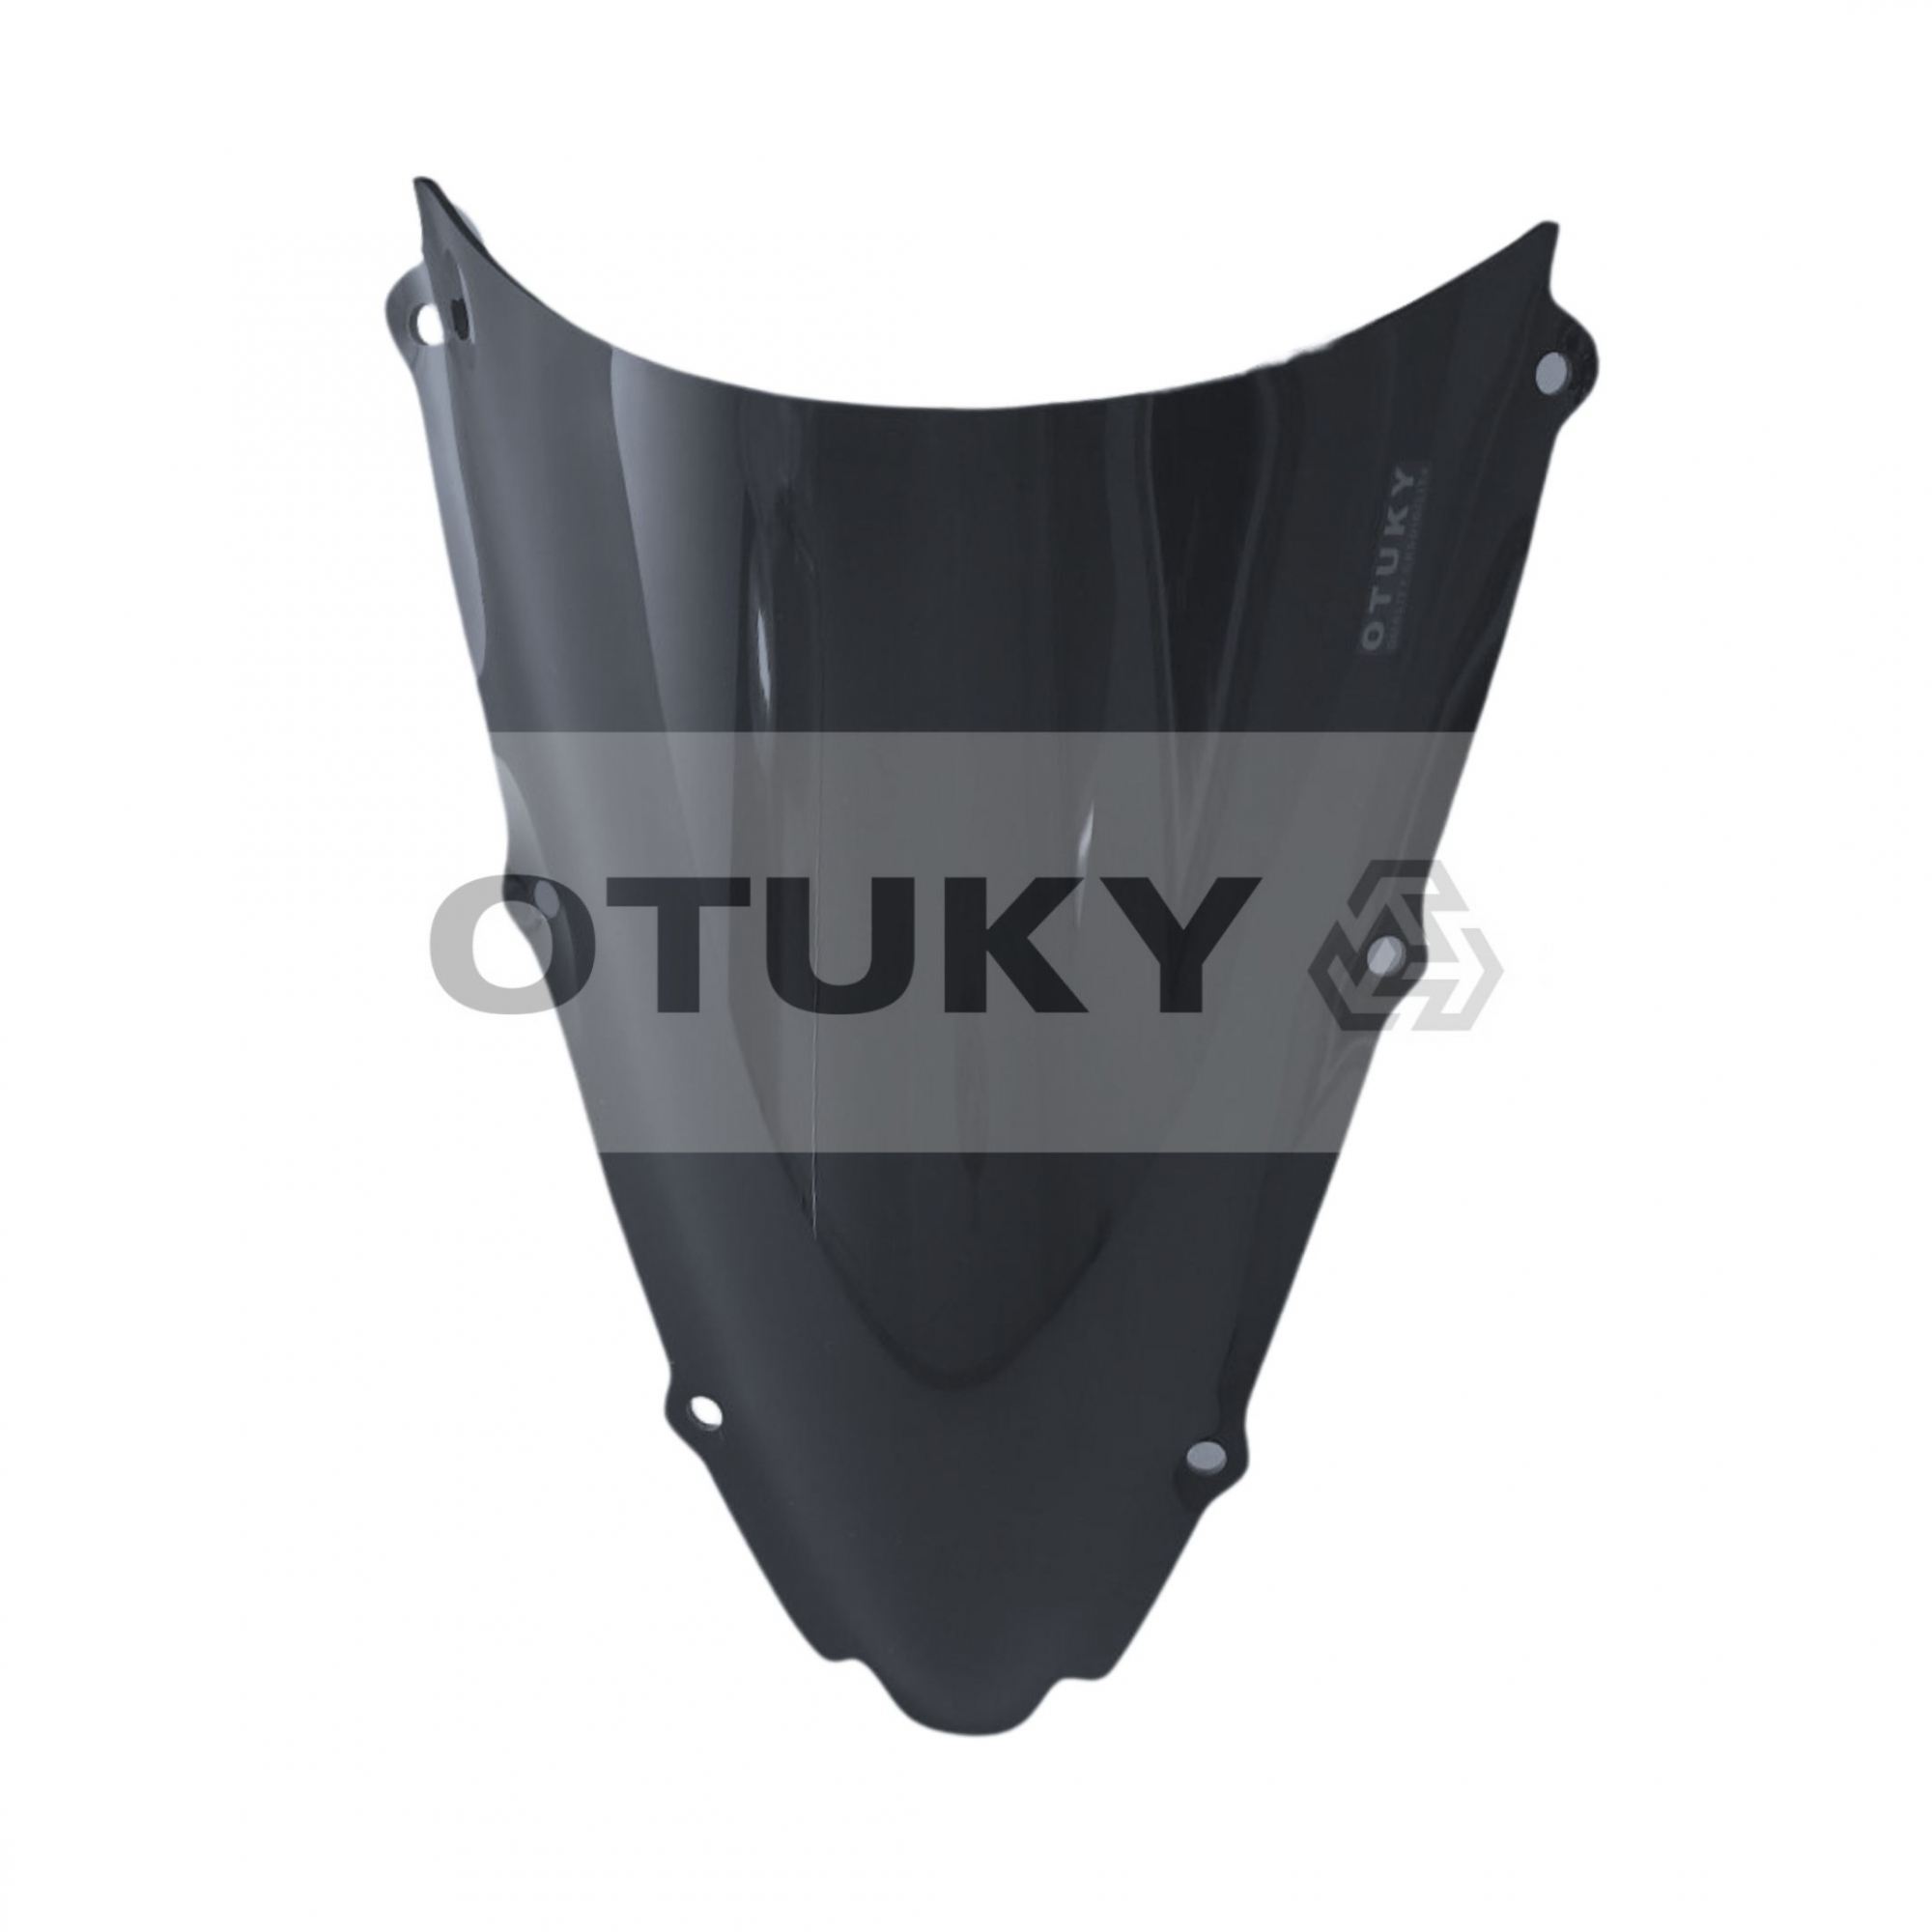 Bolha para Moto YZF R1 2000 2001 2002 Otuky